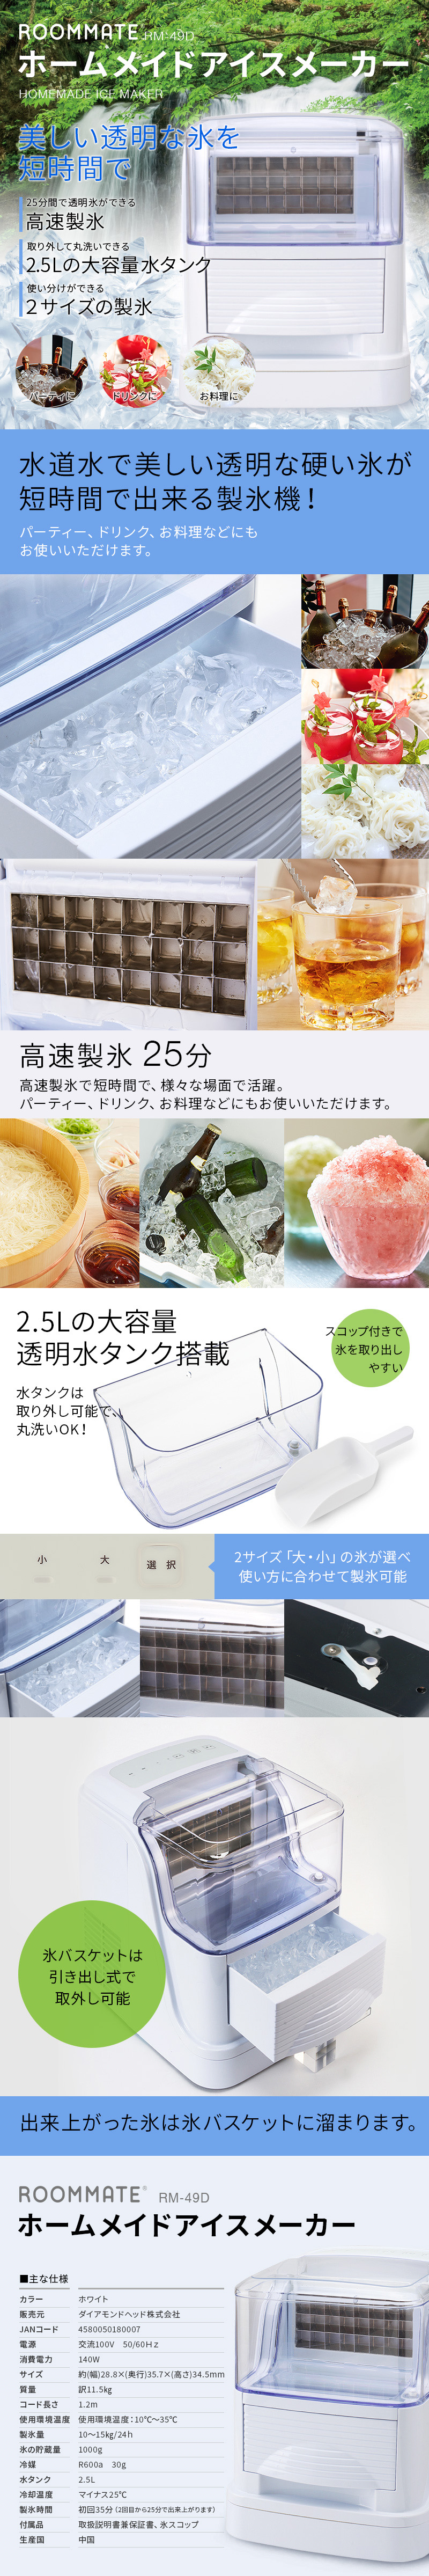 生活家電【良品】ROOMMATE ホームメイドアイスメーカー 製氷機 RM-49D 